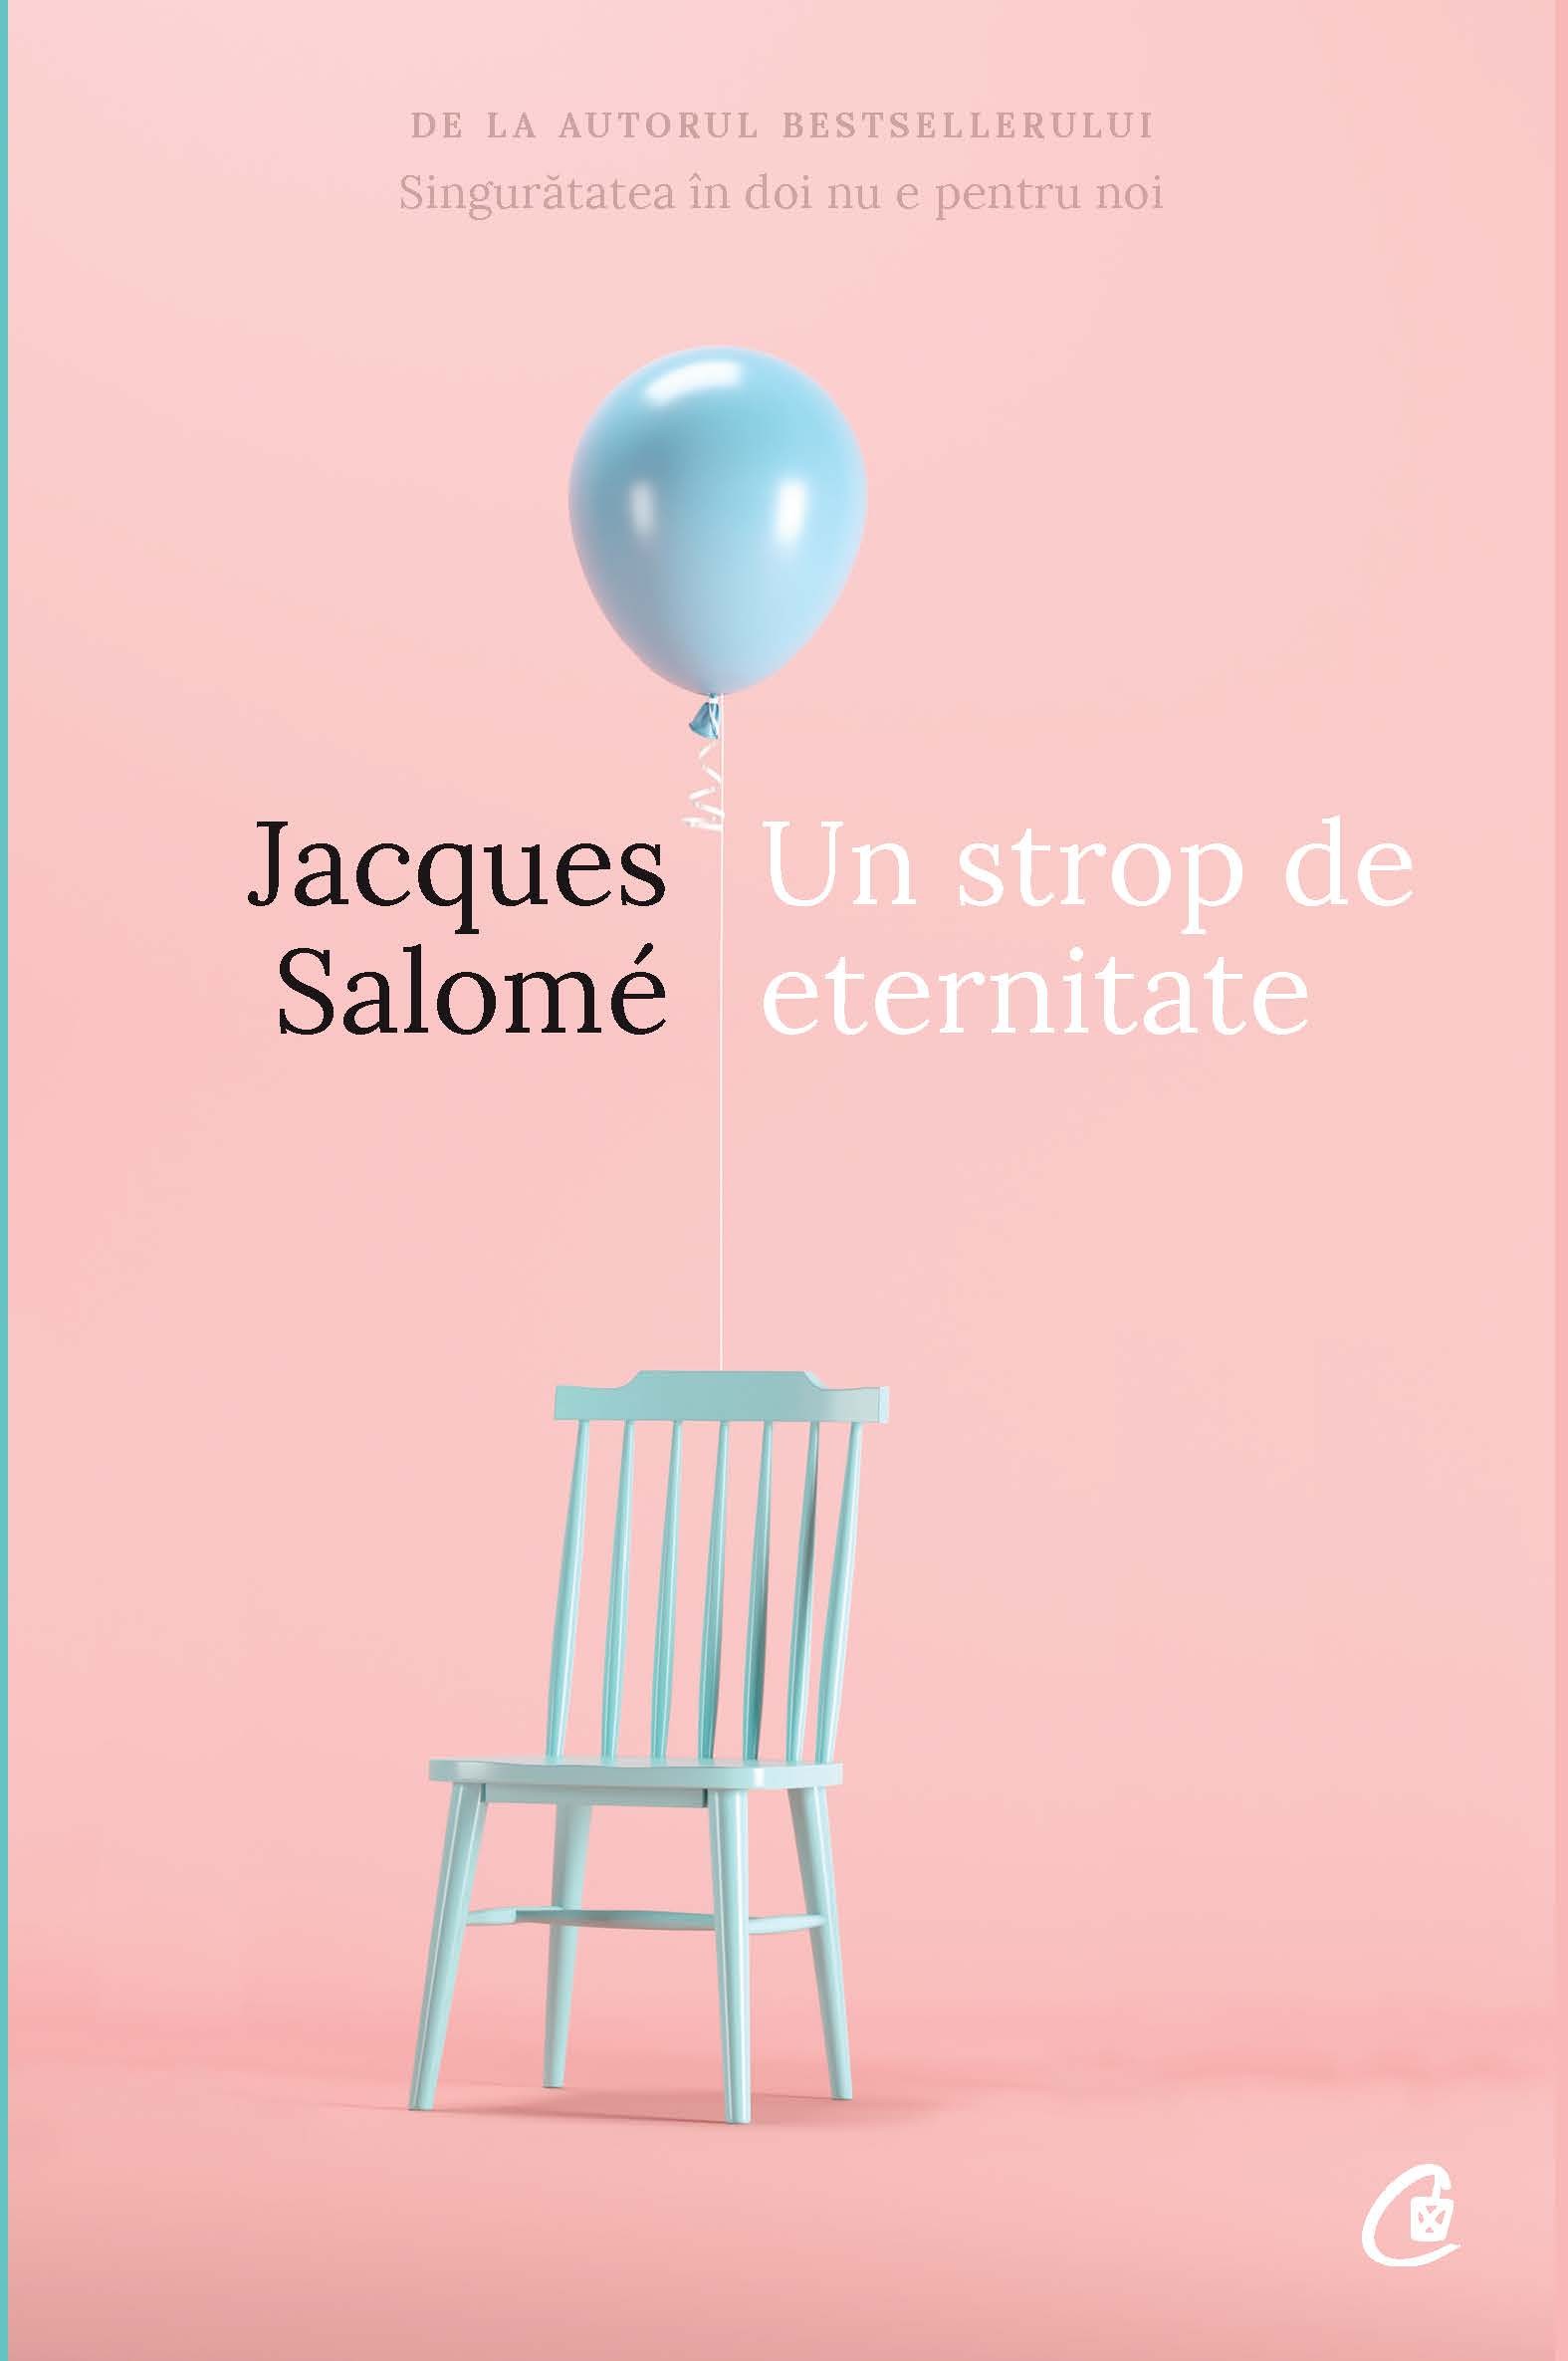 Un strop de eternitate - Jacques Salome